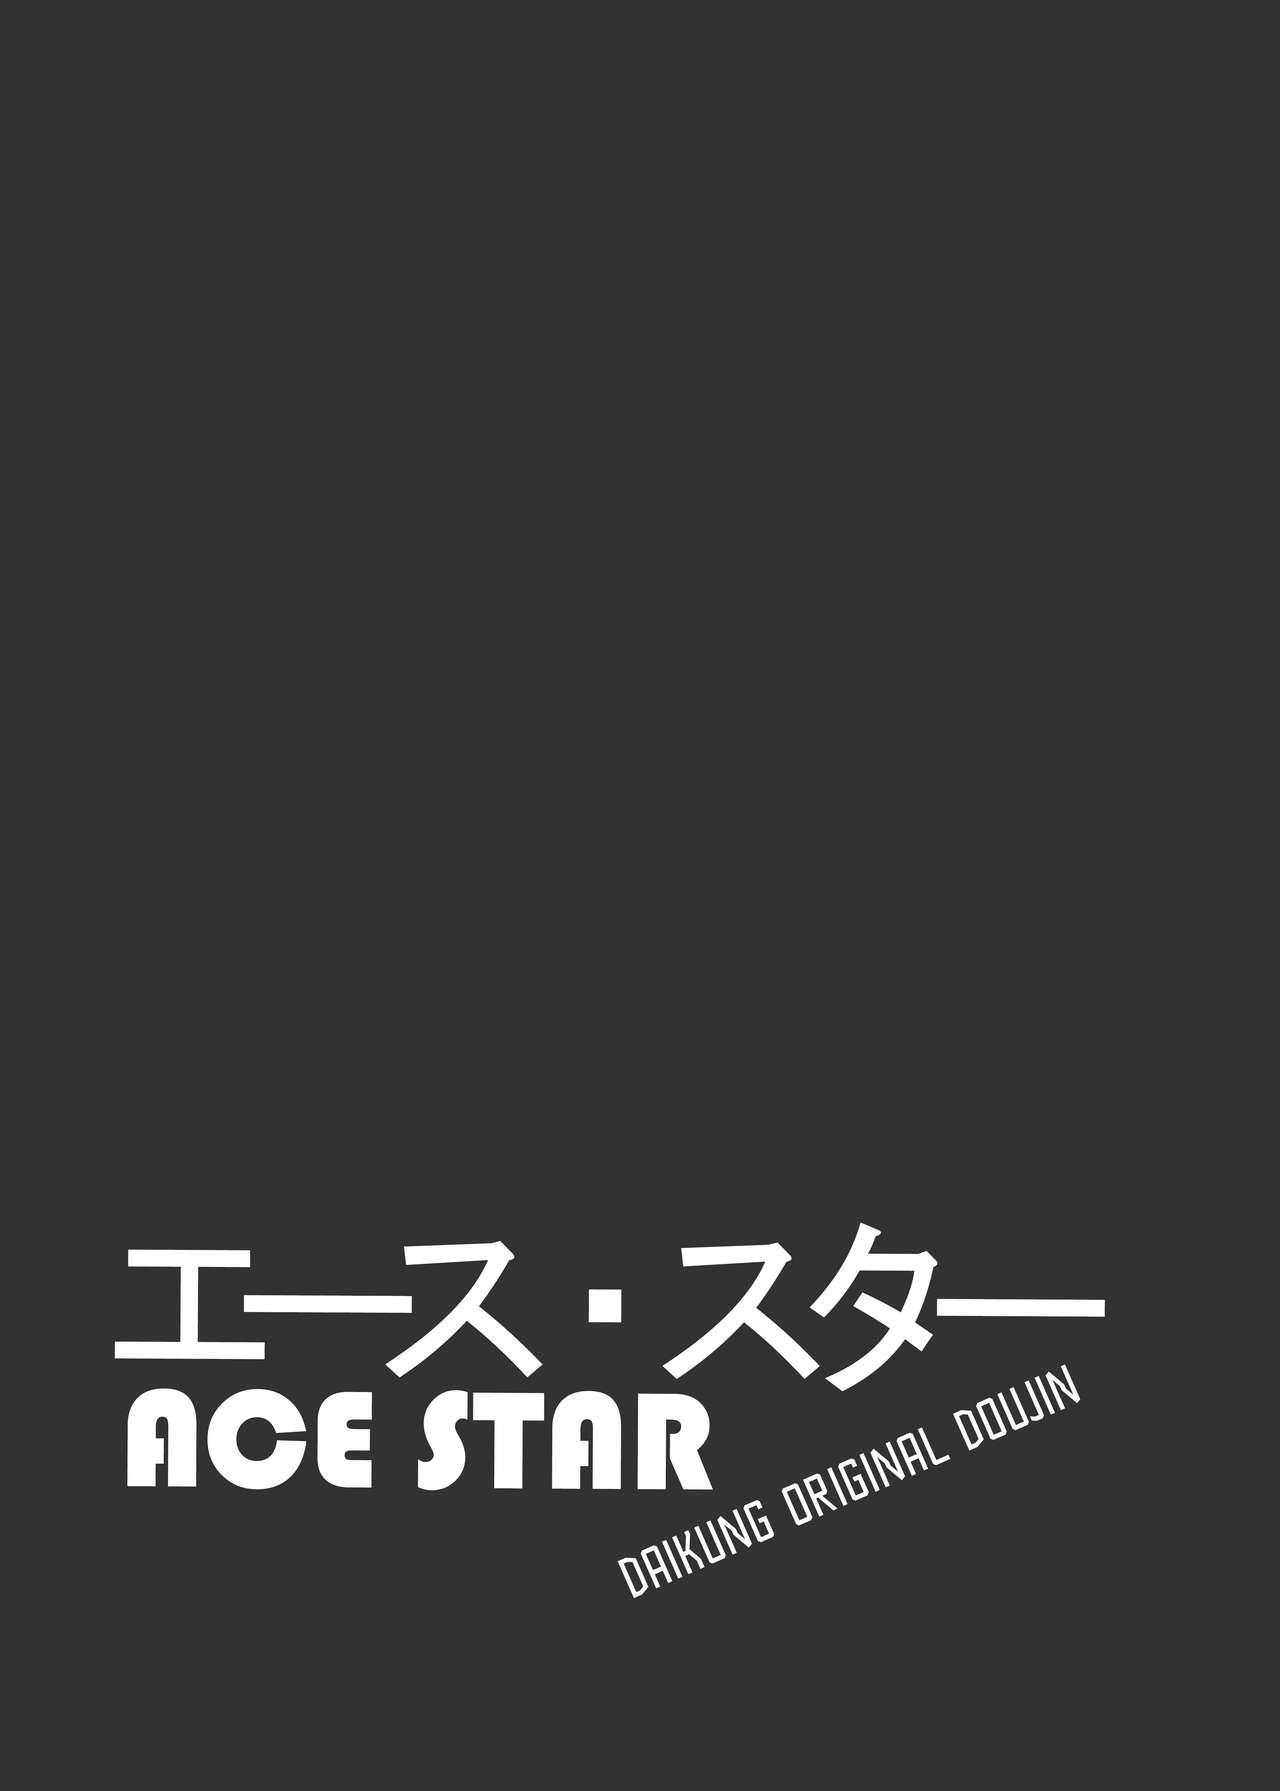 Ace Star 1